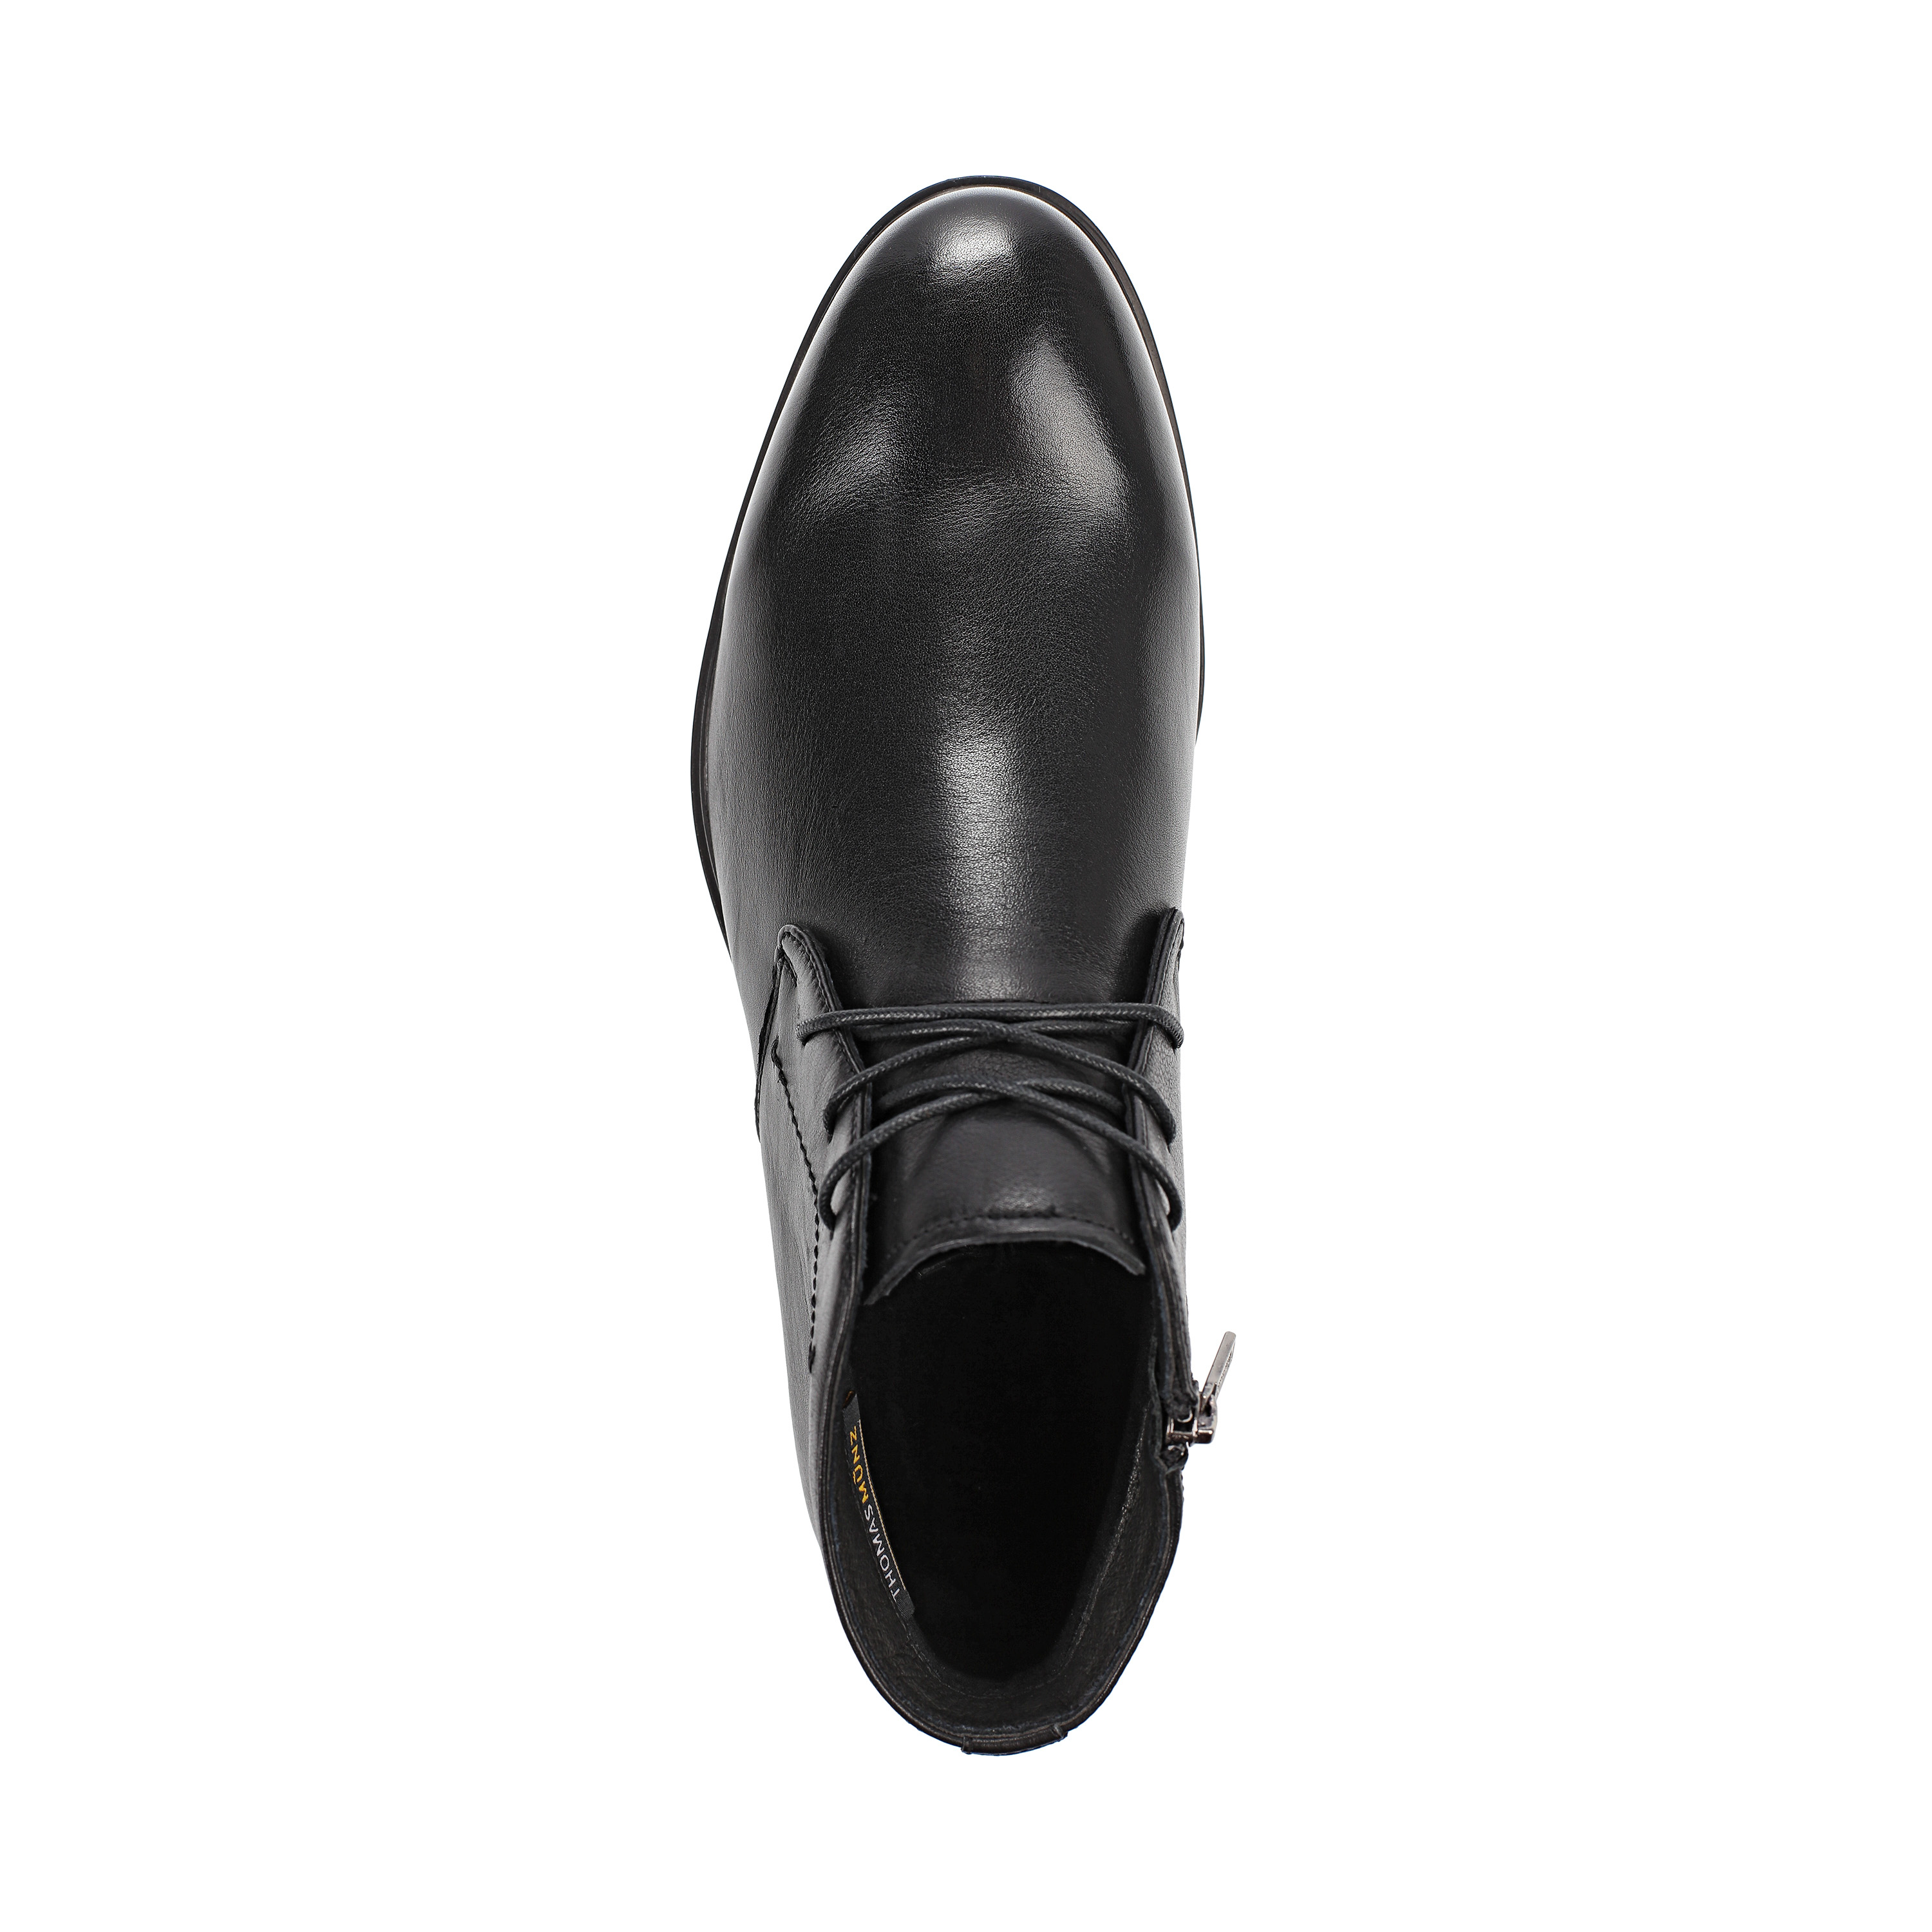 Ботинки Thomas Munz 073-002D-2102 073-002D-2102, цвет черный, размер 45 дерби - фото 5